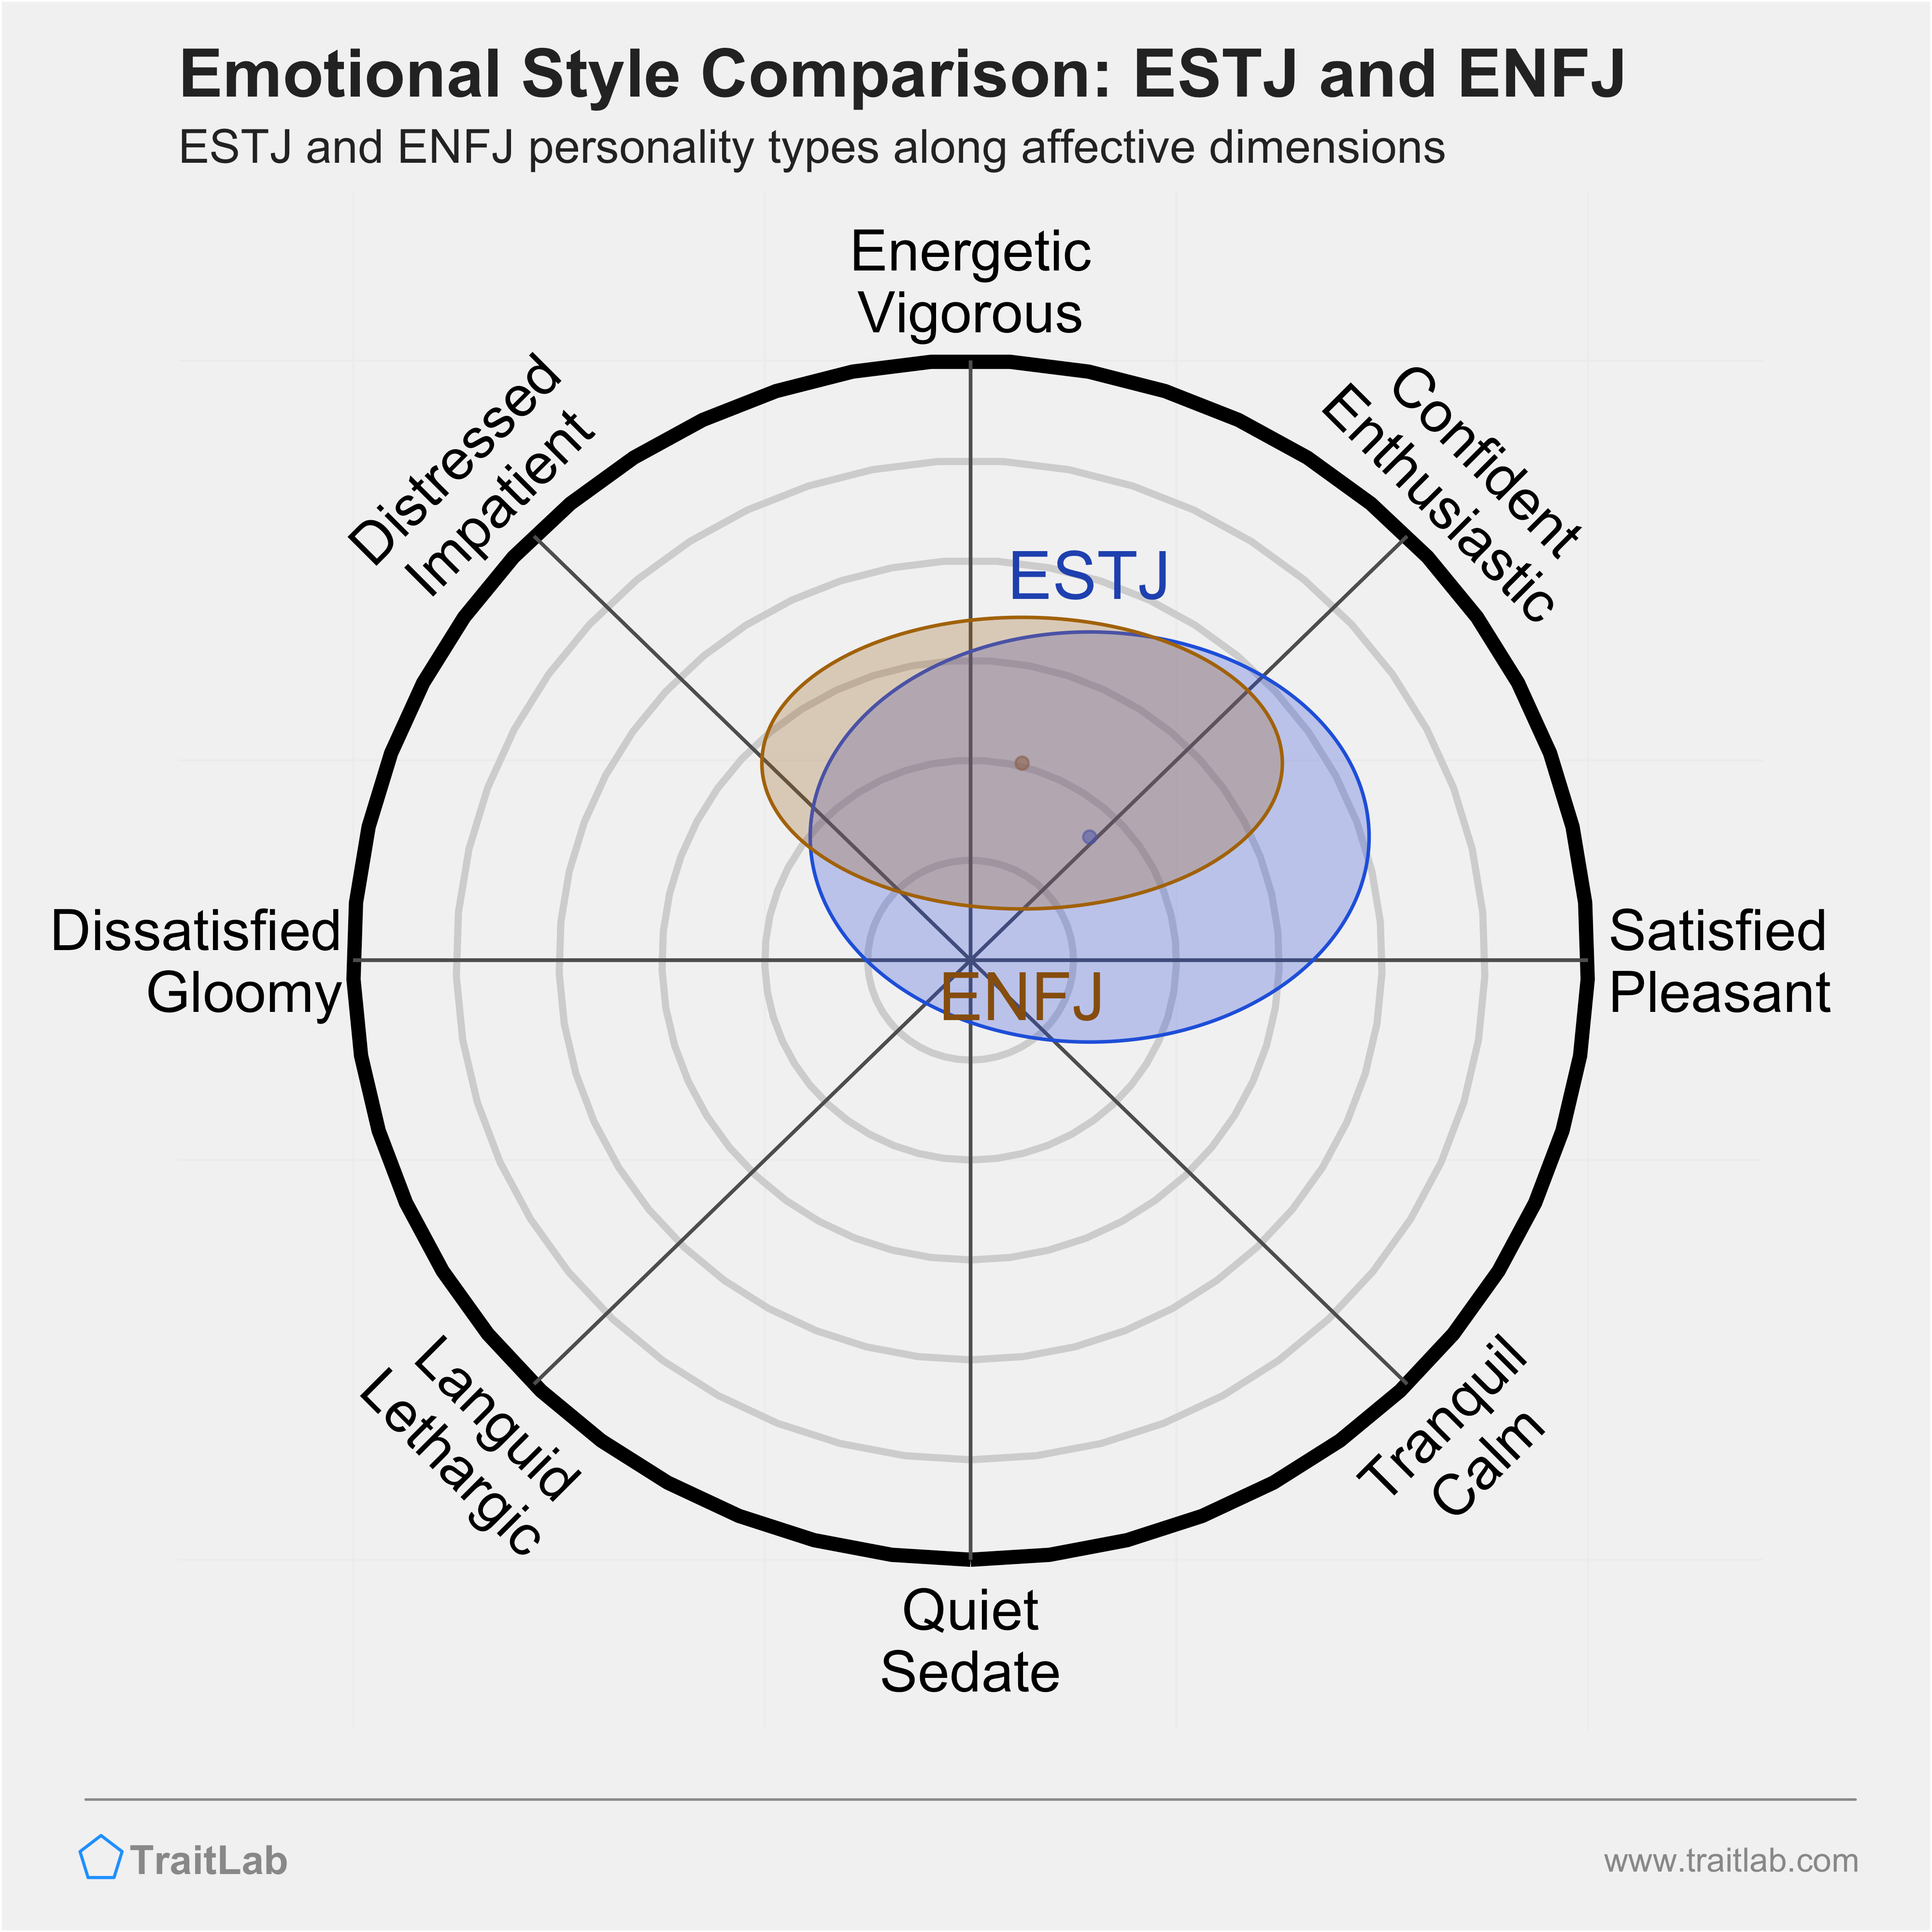 ESTJ and ENFJ comparison across emotional (affective) dimensions